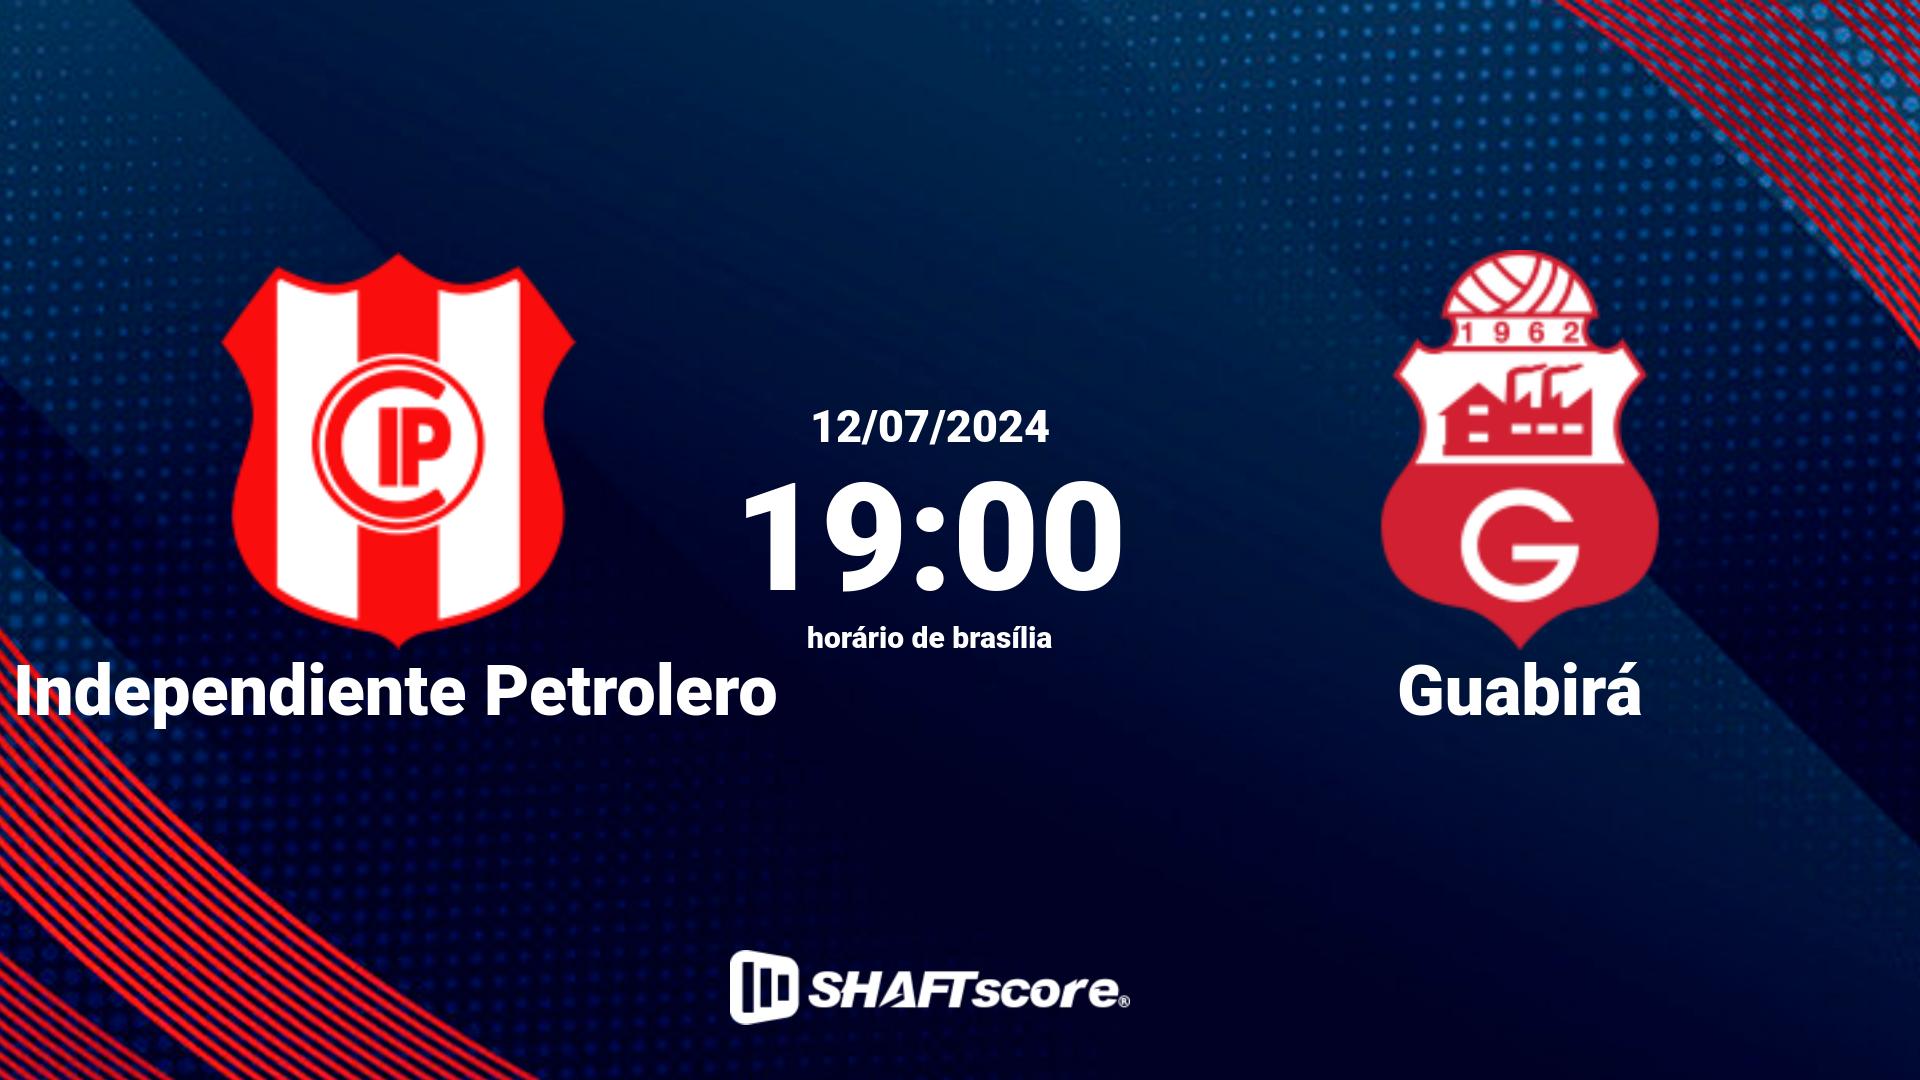 Estatísticas do jogo Independiente Petrolero vs Guabirá 12.07 19:00